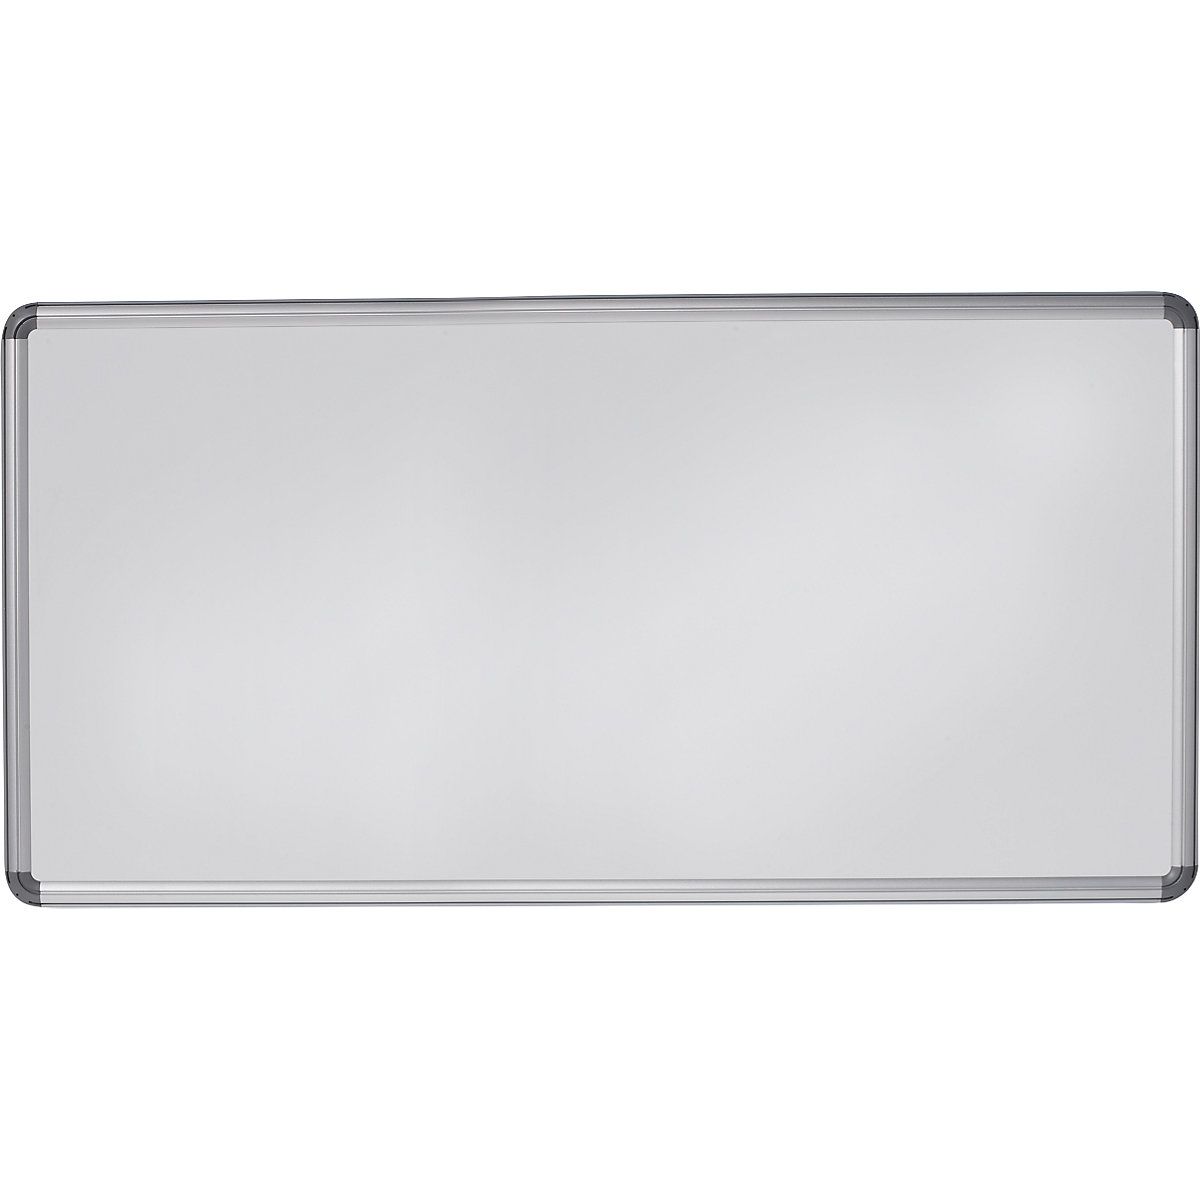 Designerska tablica ścienna – eurokraft pro, blacha stalowa, lakierowana, szer. x wys. 2000 x 1000 mm, biały-11